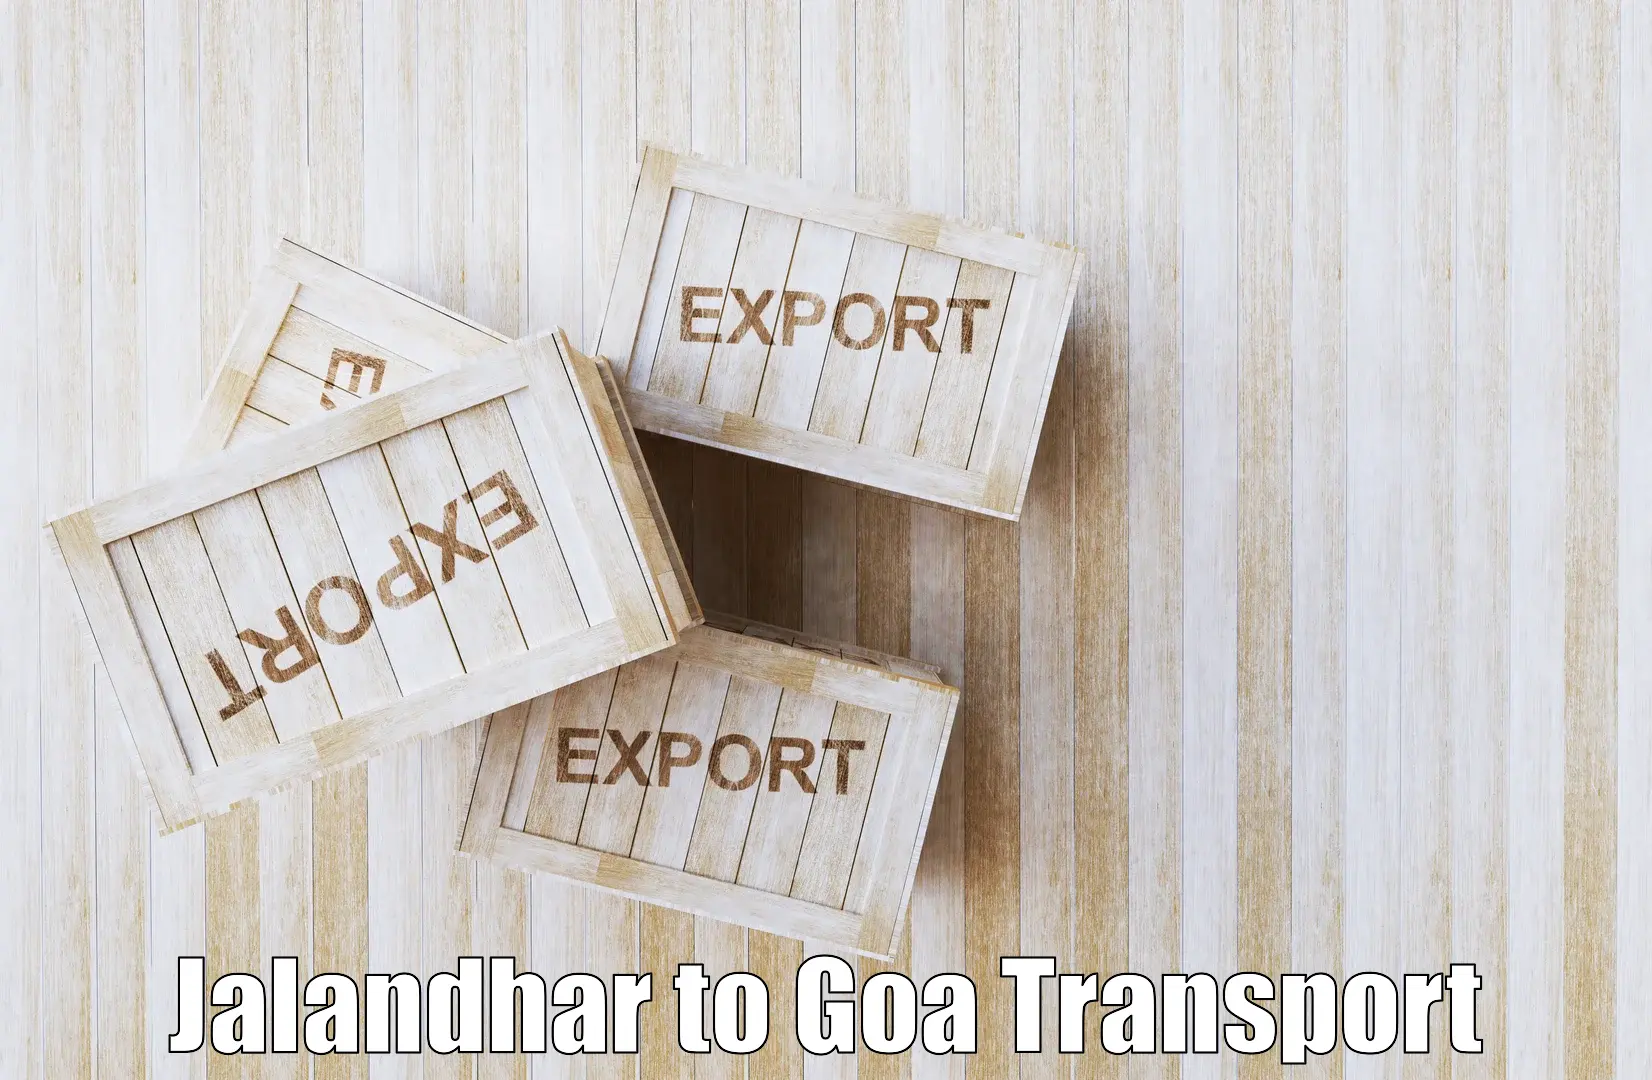 Commercial transport service Jalandhar to Goa